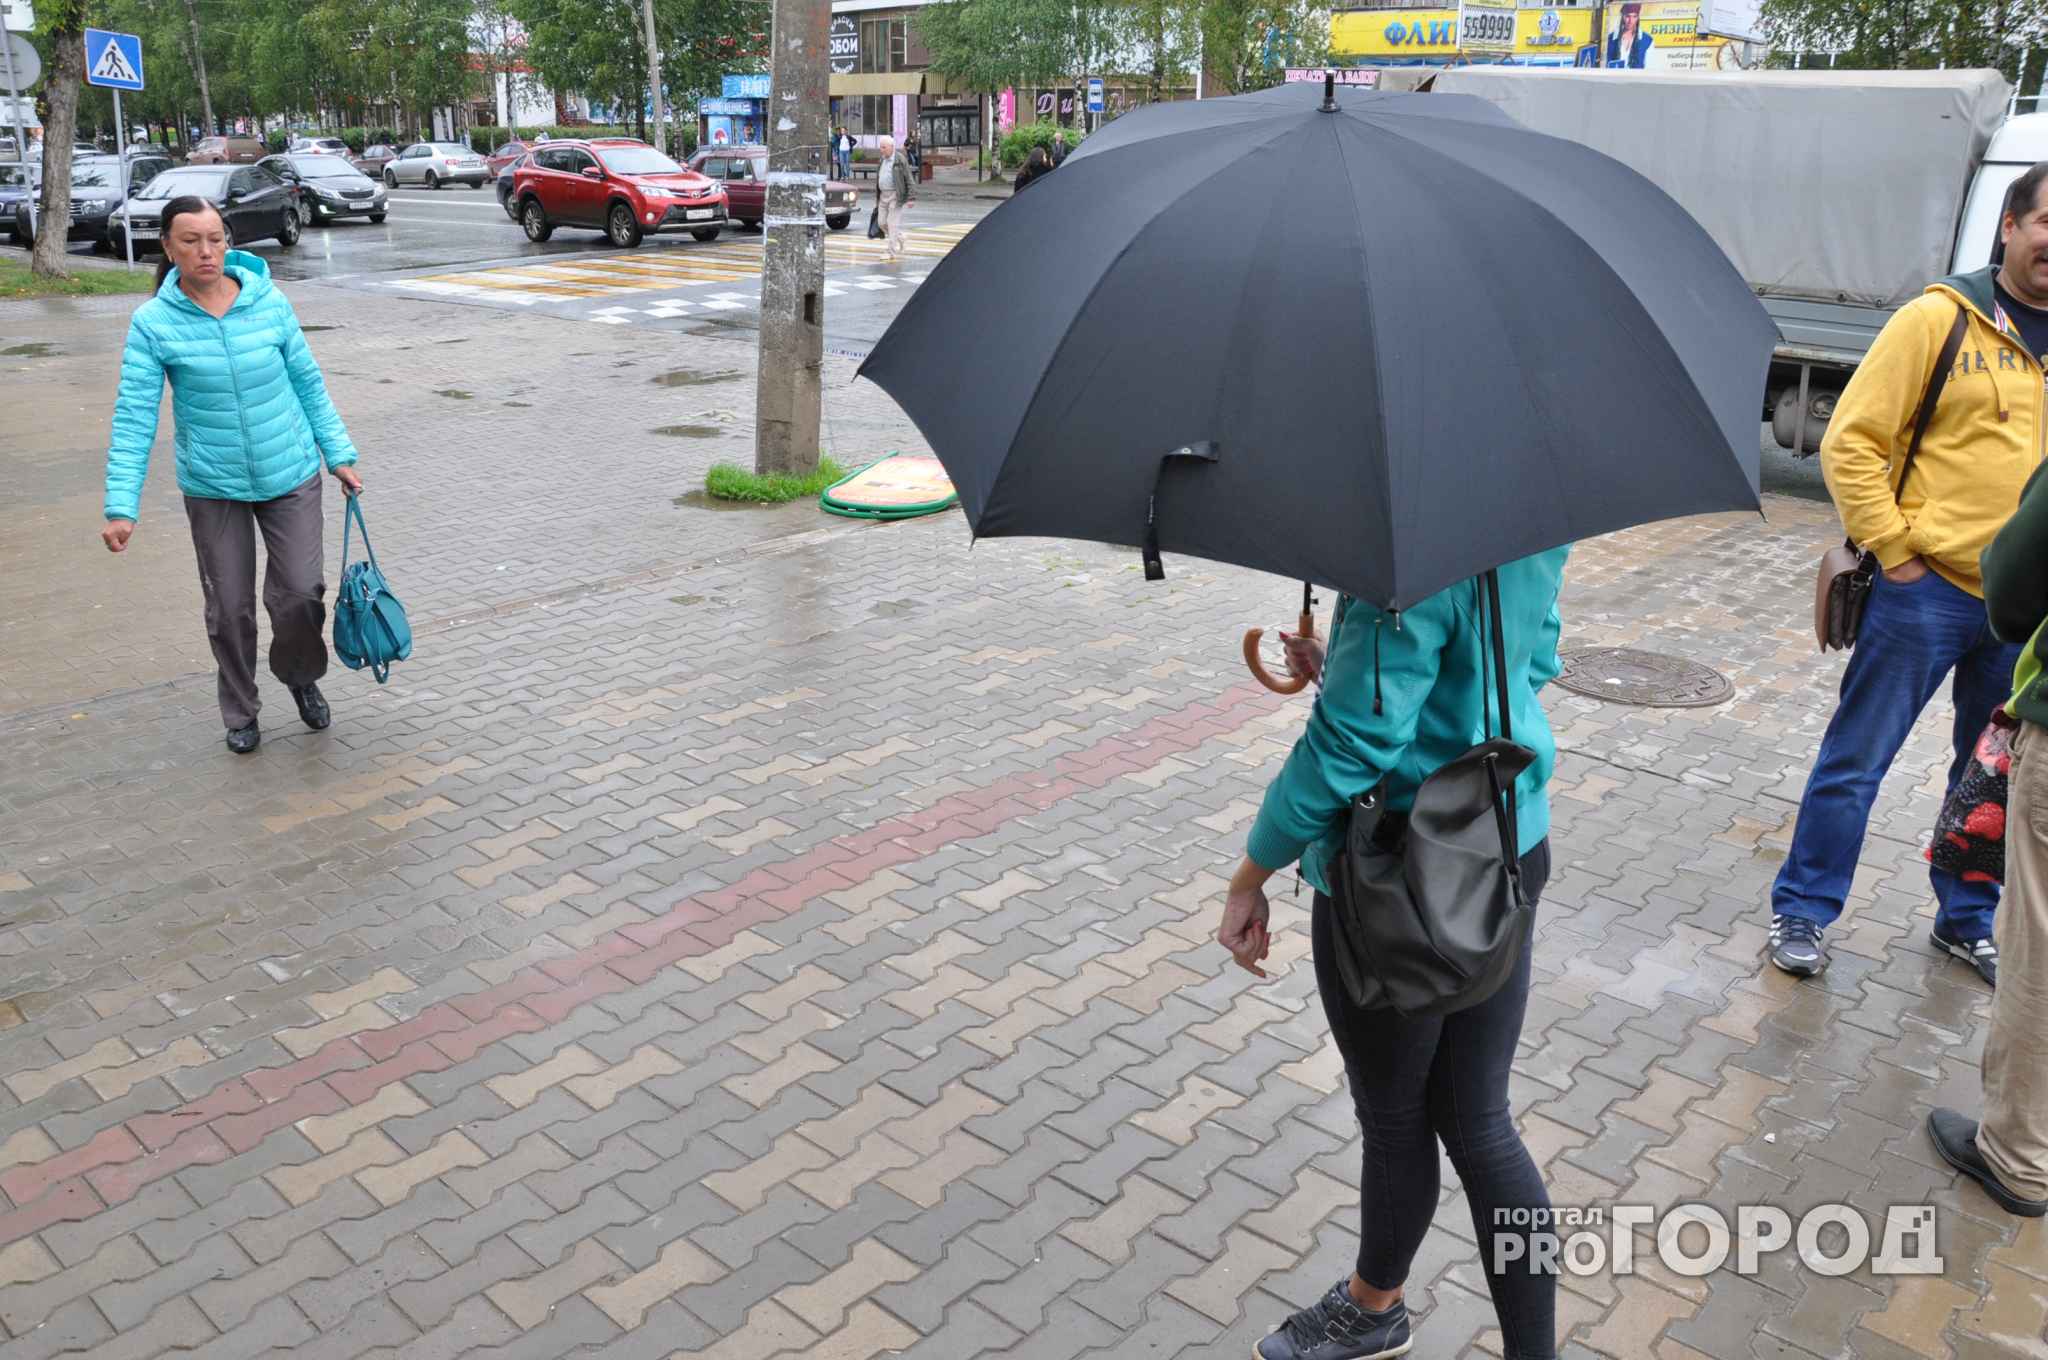 Сегодня йошкаролинцам нужно взять с собой зонт